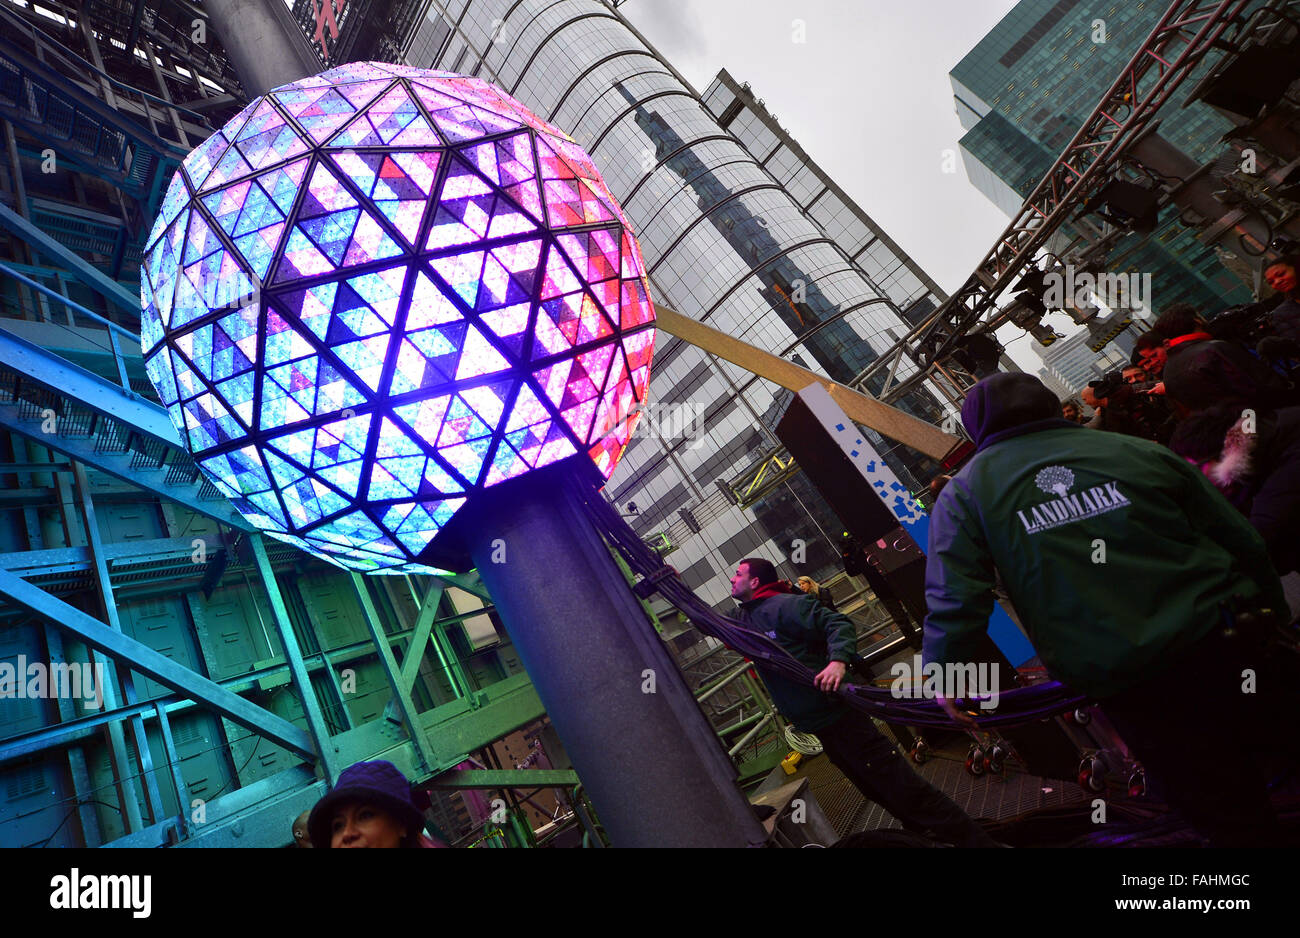 New York, Stati Uniti d'America. 30 Dic, 2015. Il Times Square Capodanno sfera viene testato il giorno prima i festeggiamenti di Capodanno in cima al tetto di una Times Square a New York, gli Stati Uniti, il 30 dicembre, 2015. L'iconico Times Square Capodanno palla è accesa e inviato il 130-piede pole in cima a una Times Square di mercoledì per la preparazione finale. Il 32.000 led che sono nella sfera può essere controllata individualmente da software. Credito: Wang Lei/Xinhua/Alamy Live News Foto Stock